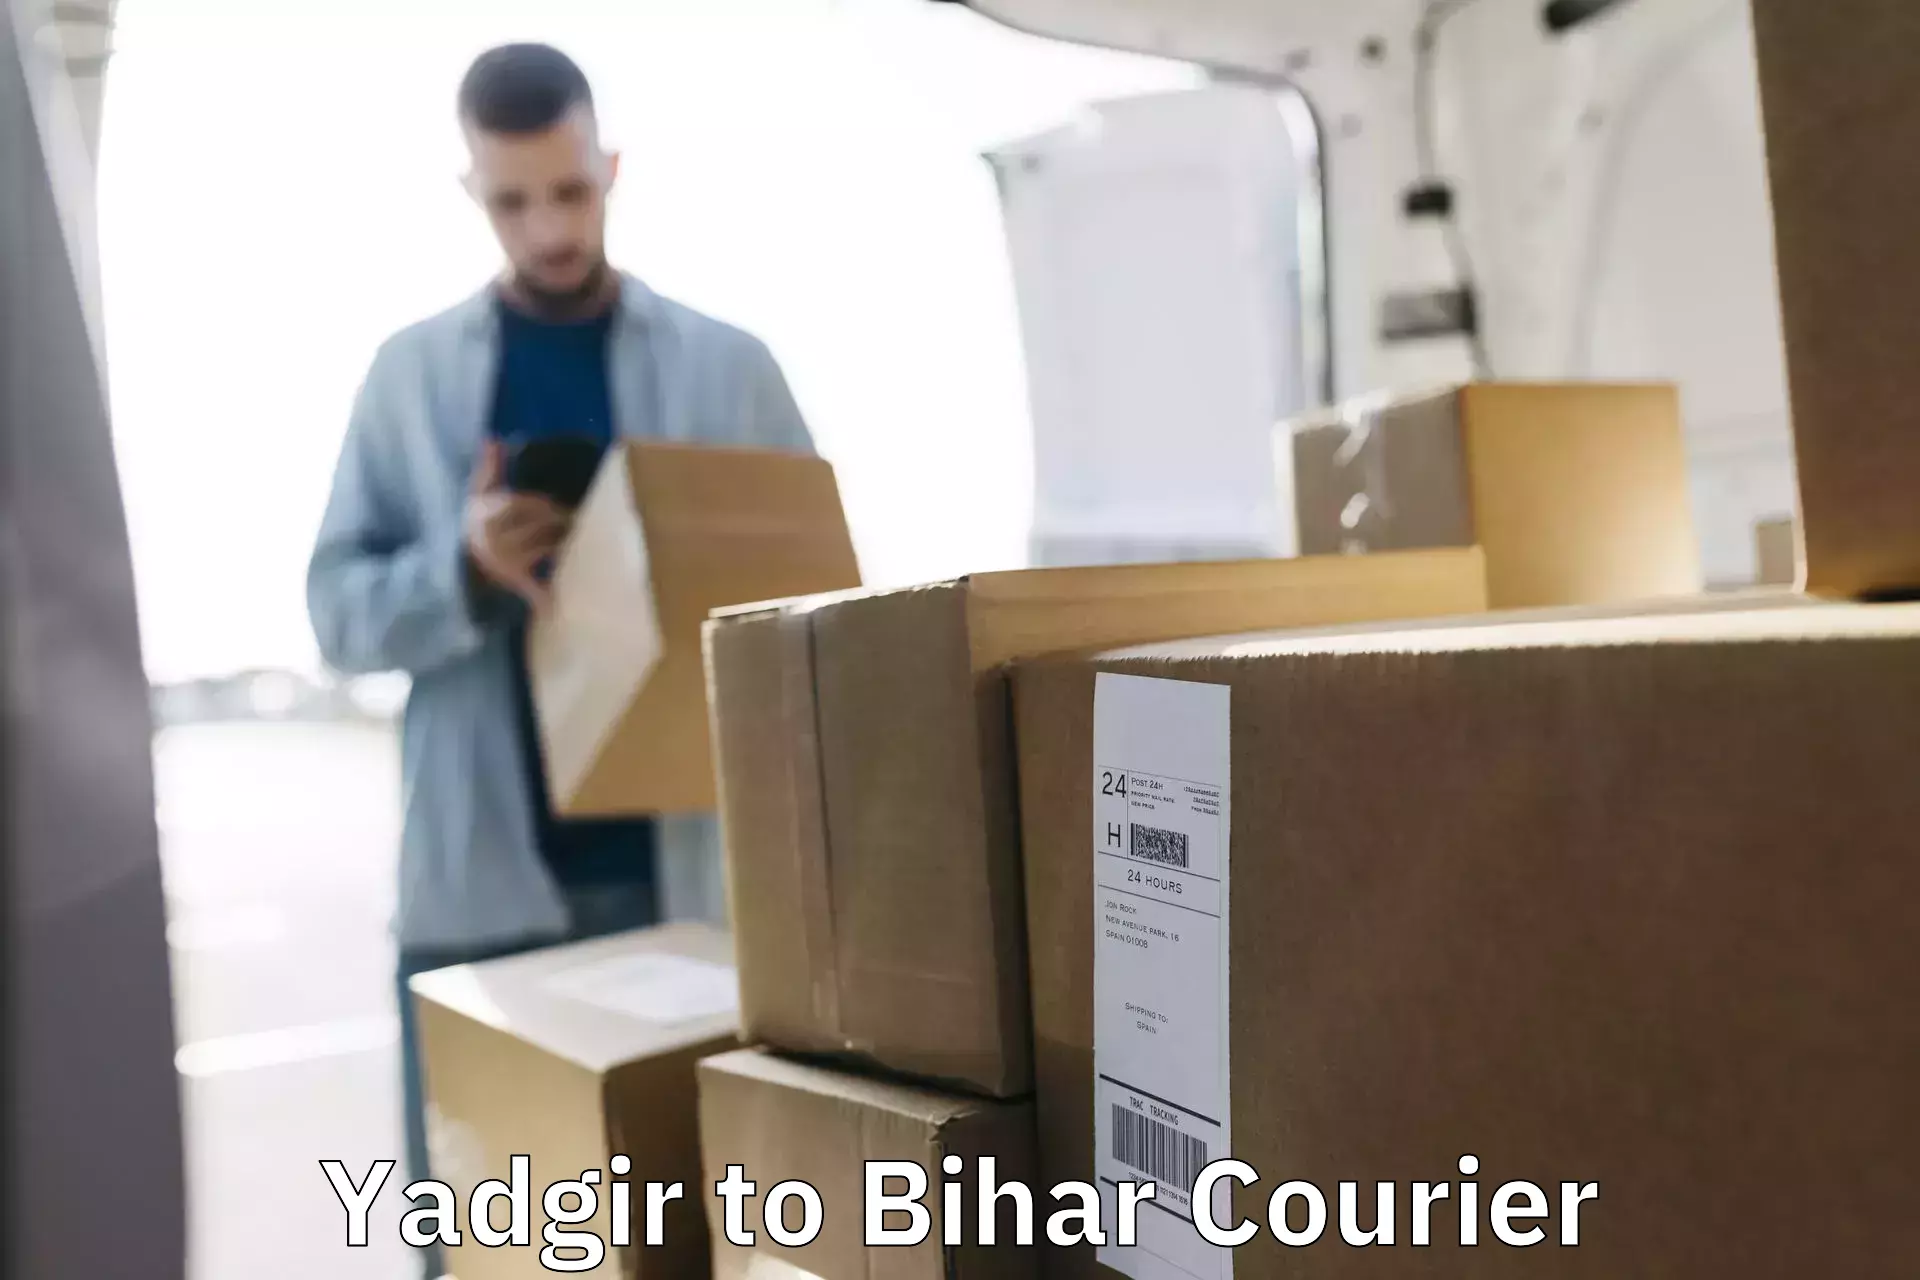 Flexible delivery schedules in Yadgir to Aurangabad Bihar